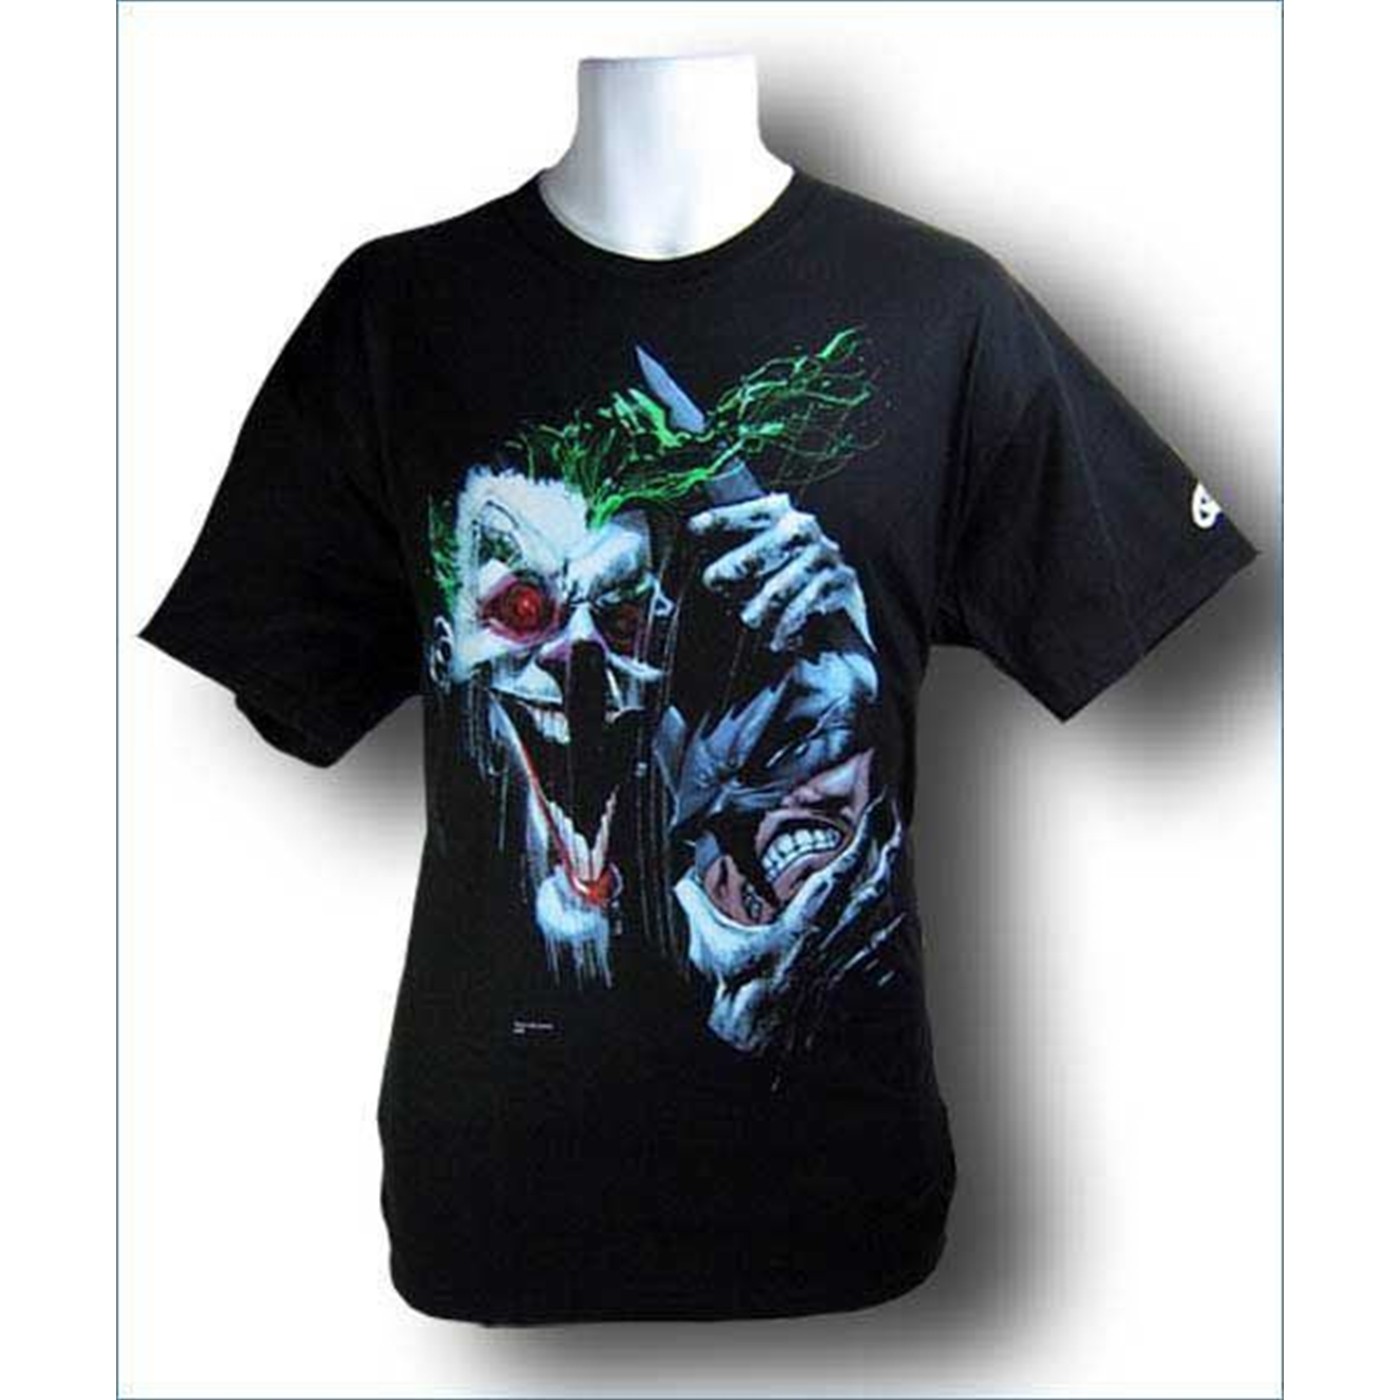 Joker Choking Batman T-shirt